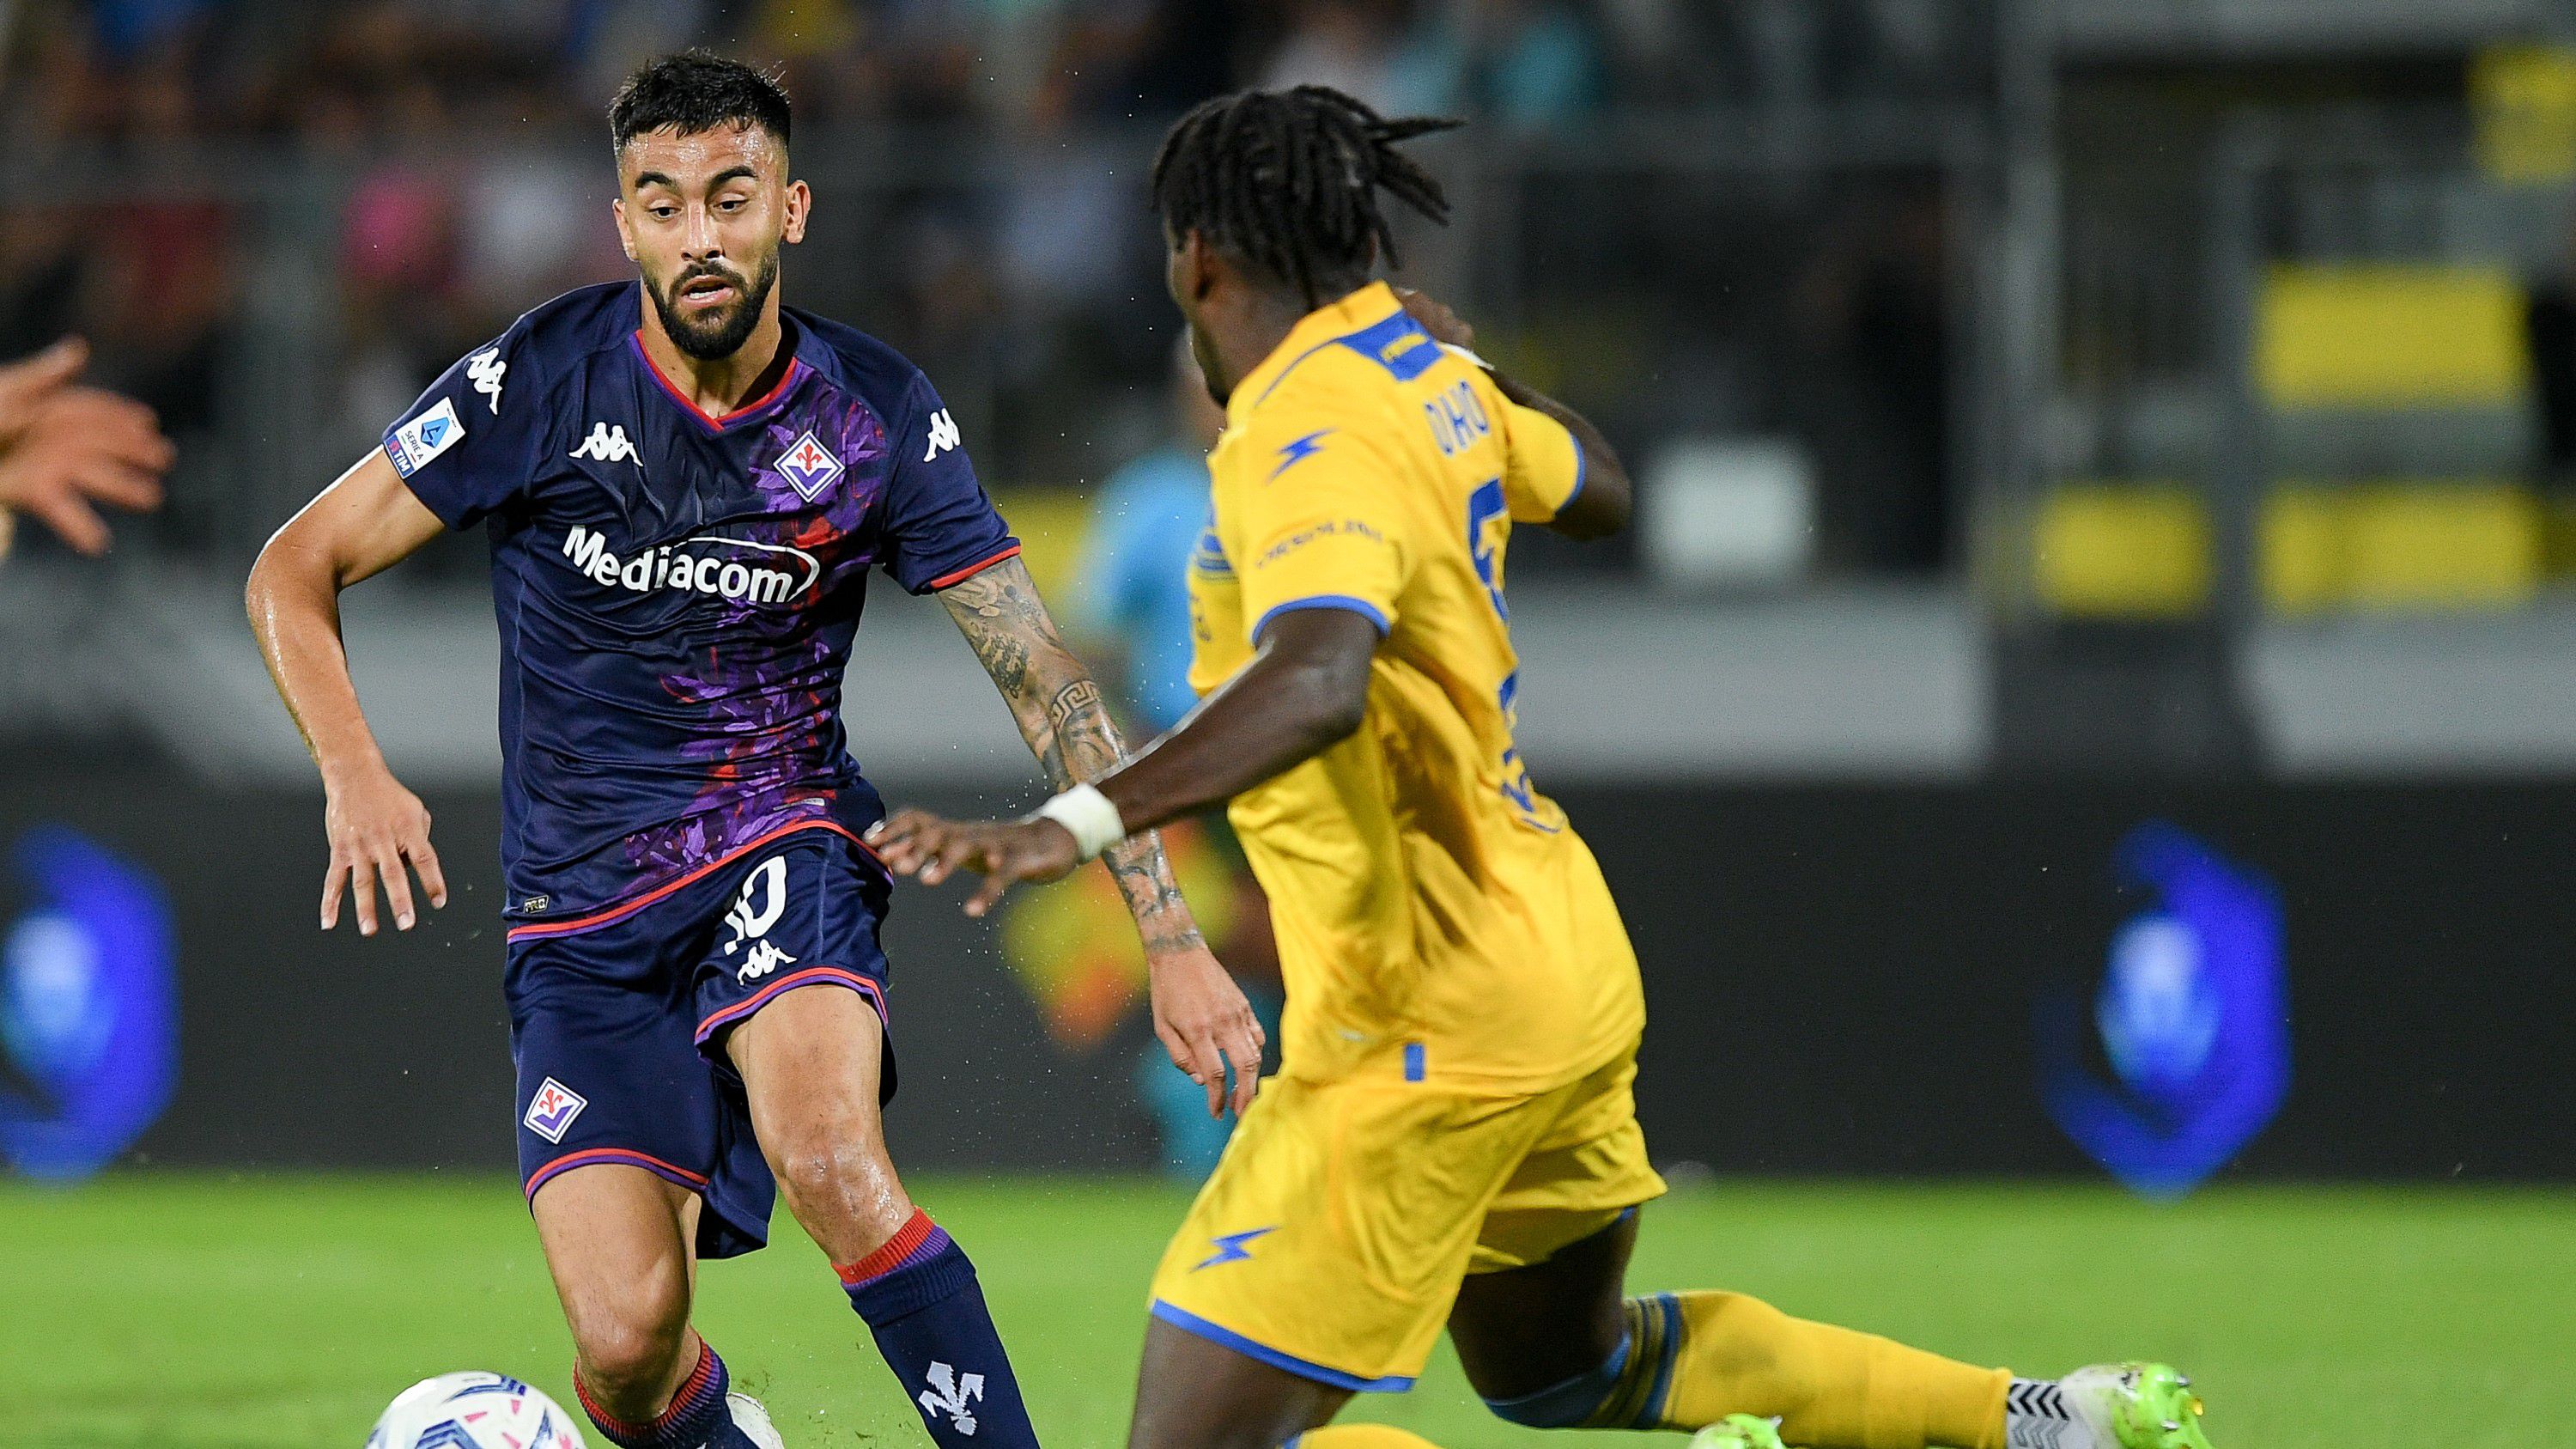 Ezúttal csak egy ponttal gazdagodott a Fradi következő EKL-ellenfele, a Fiorentina